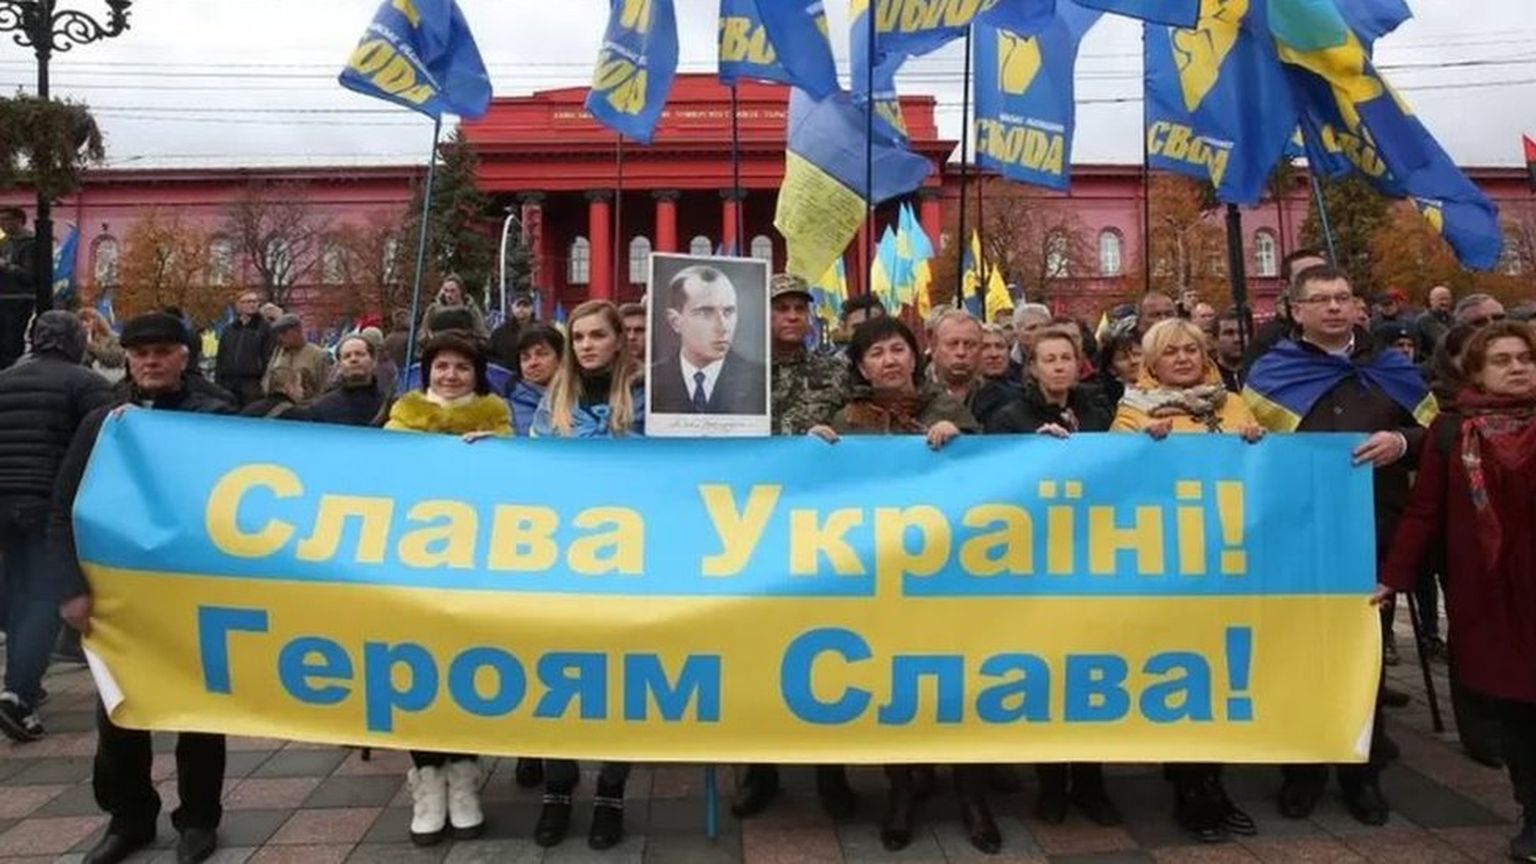 Лозунг "Слава Украине!"